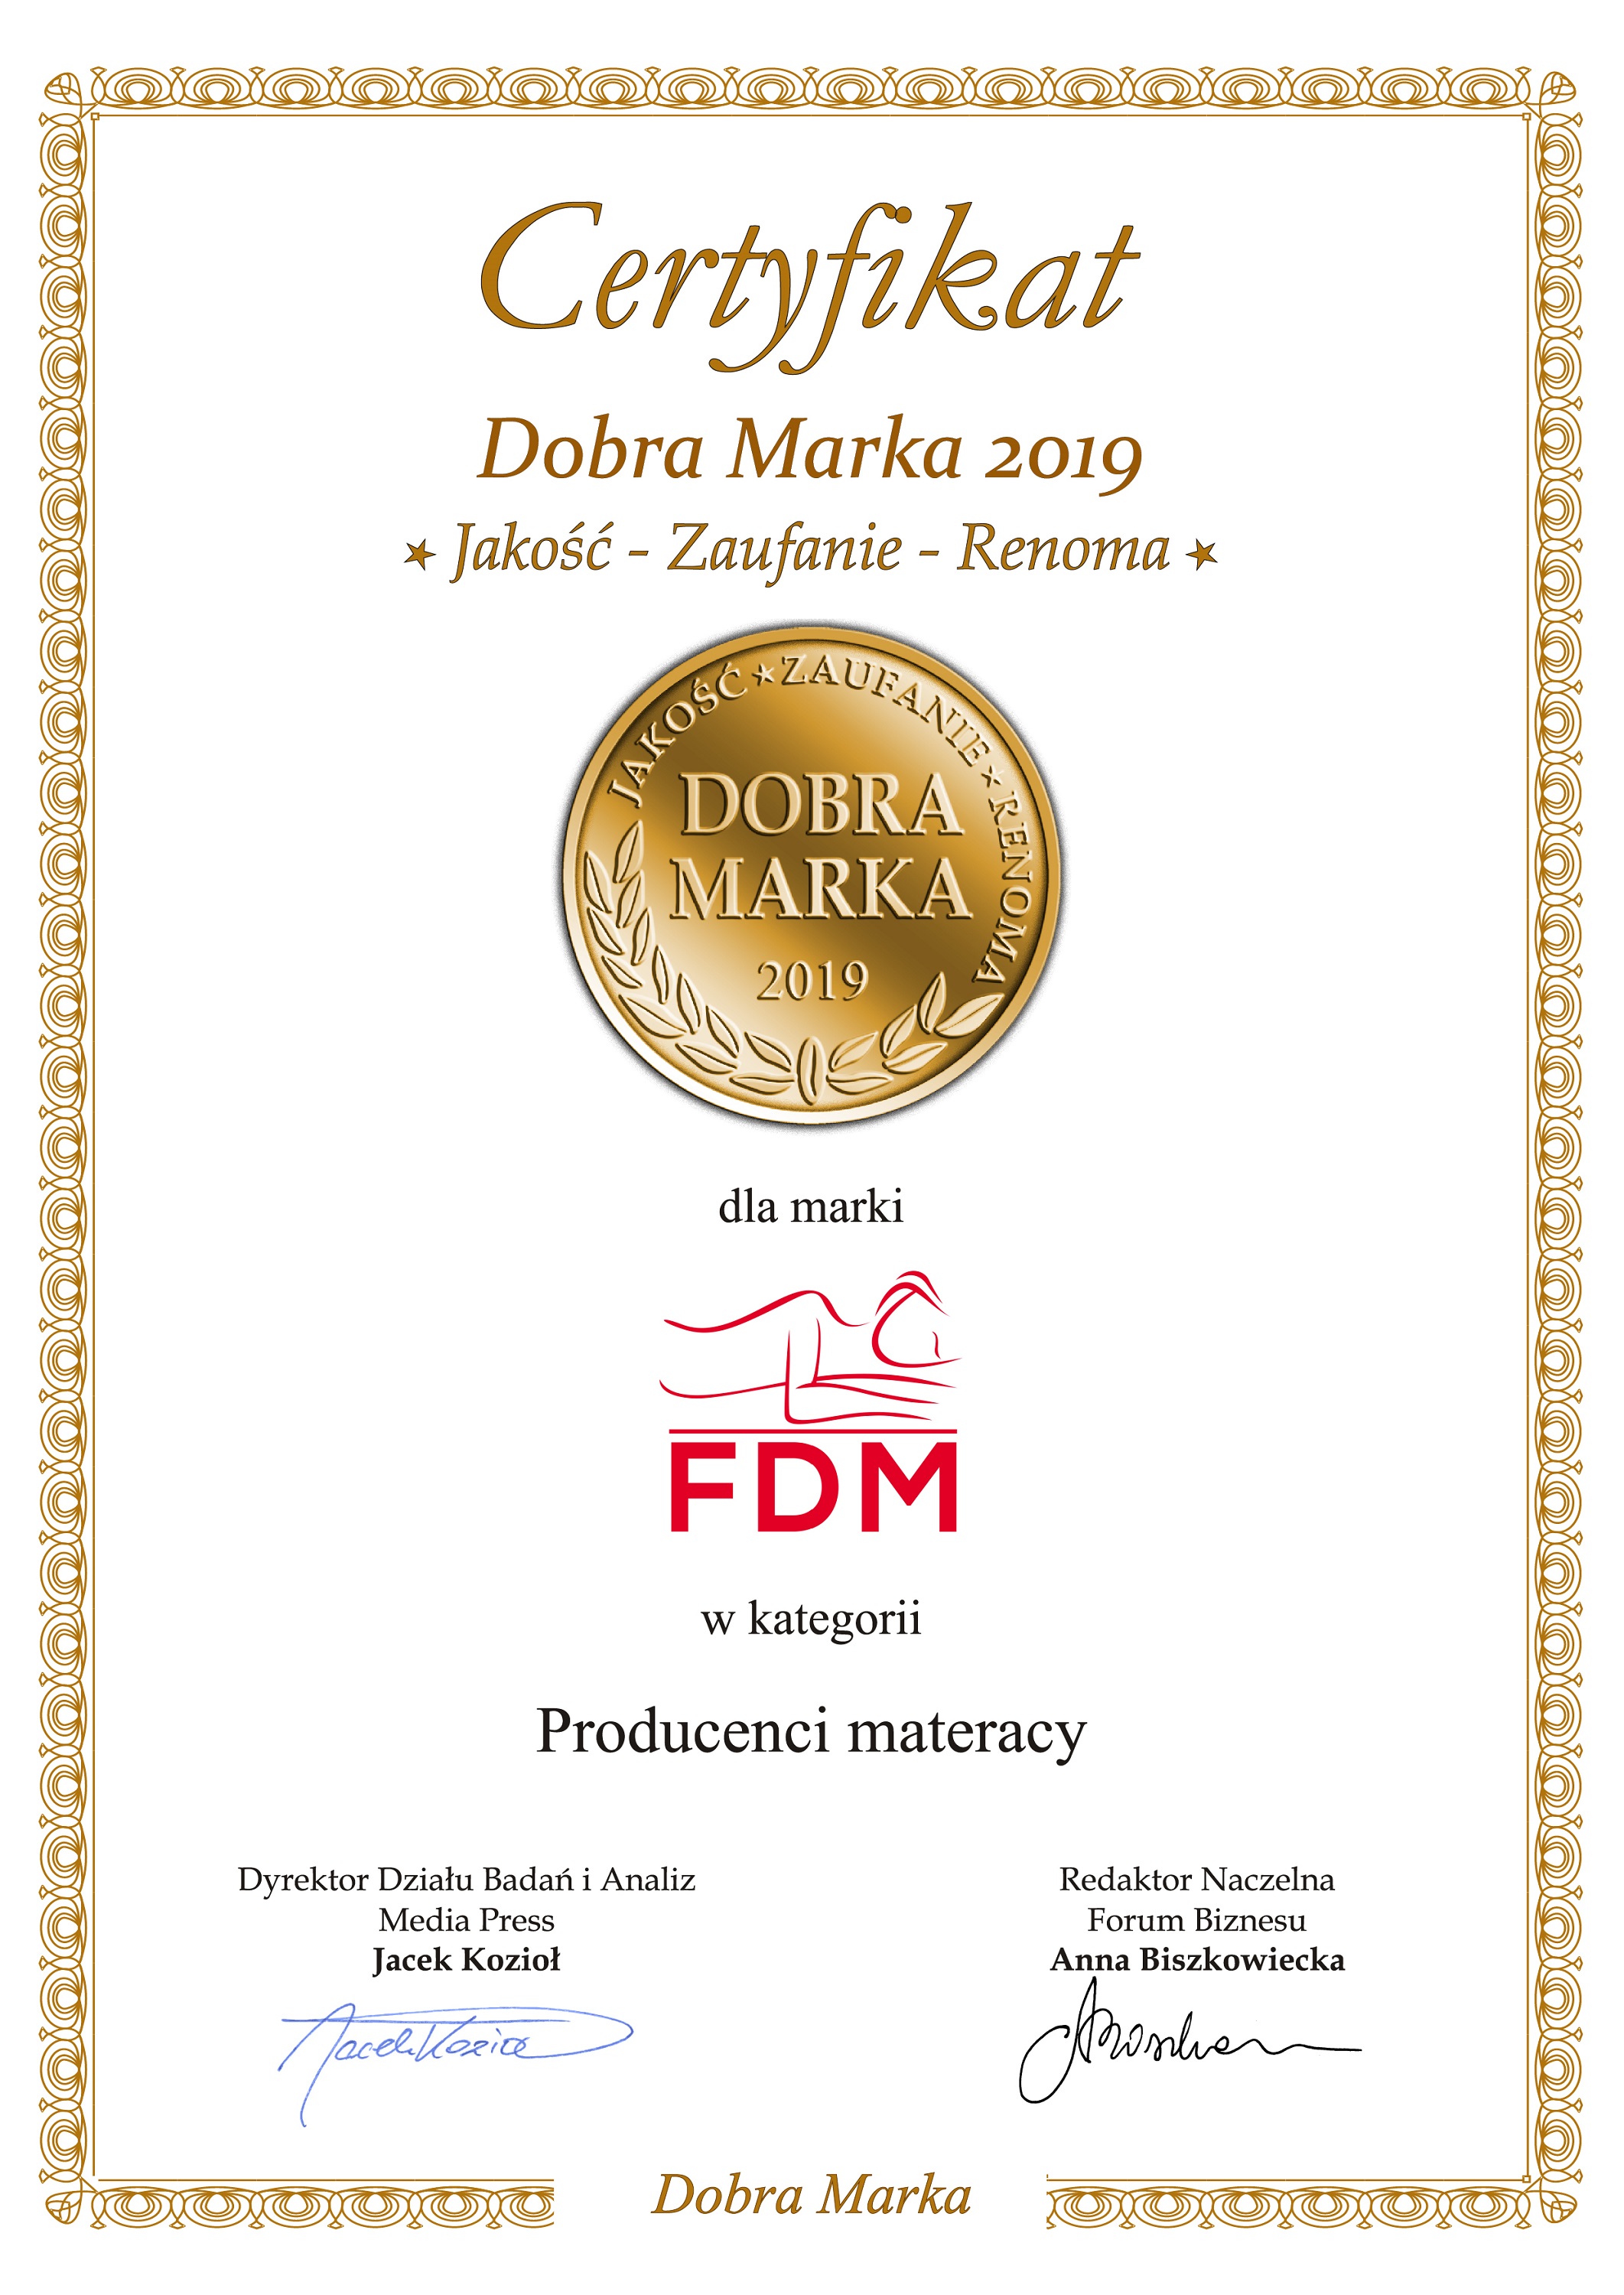 Certyfikat Dobra marka 2019 dla FDM